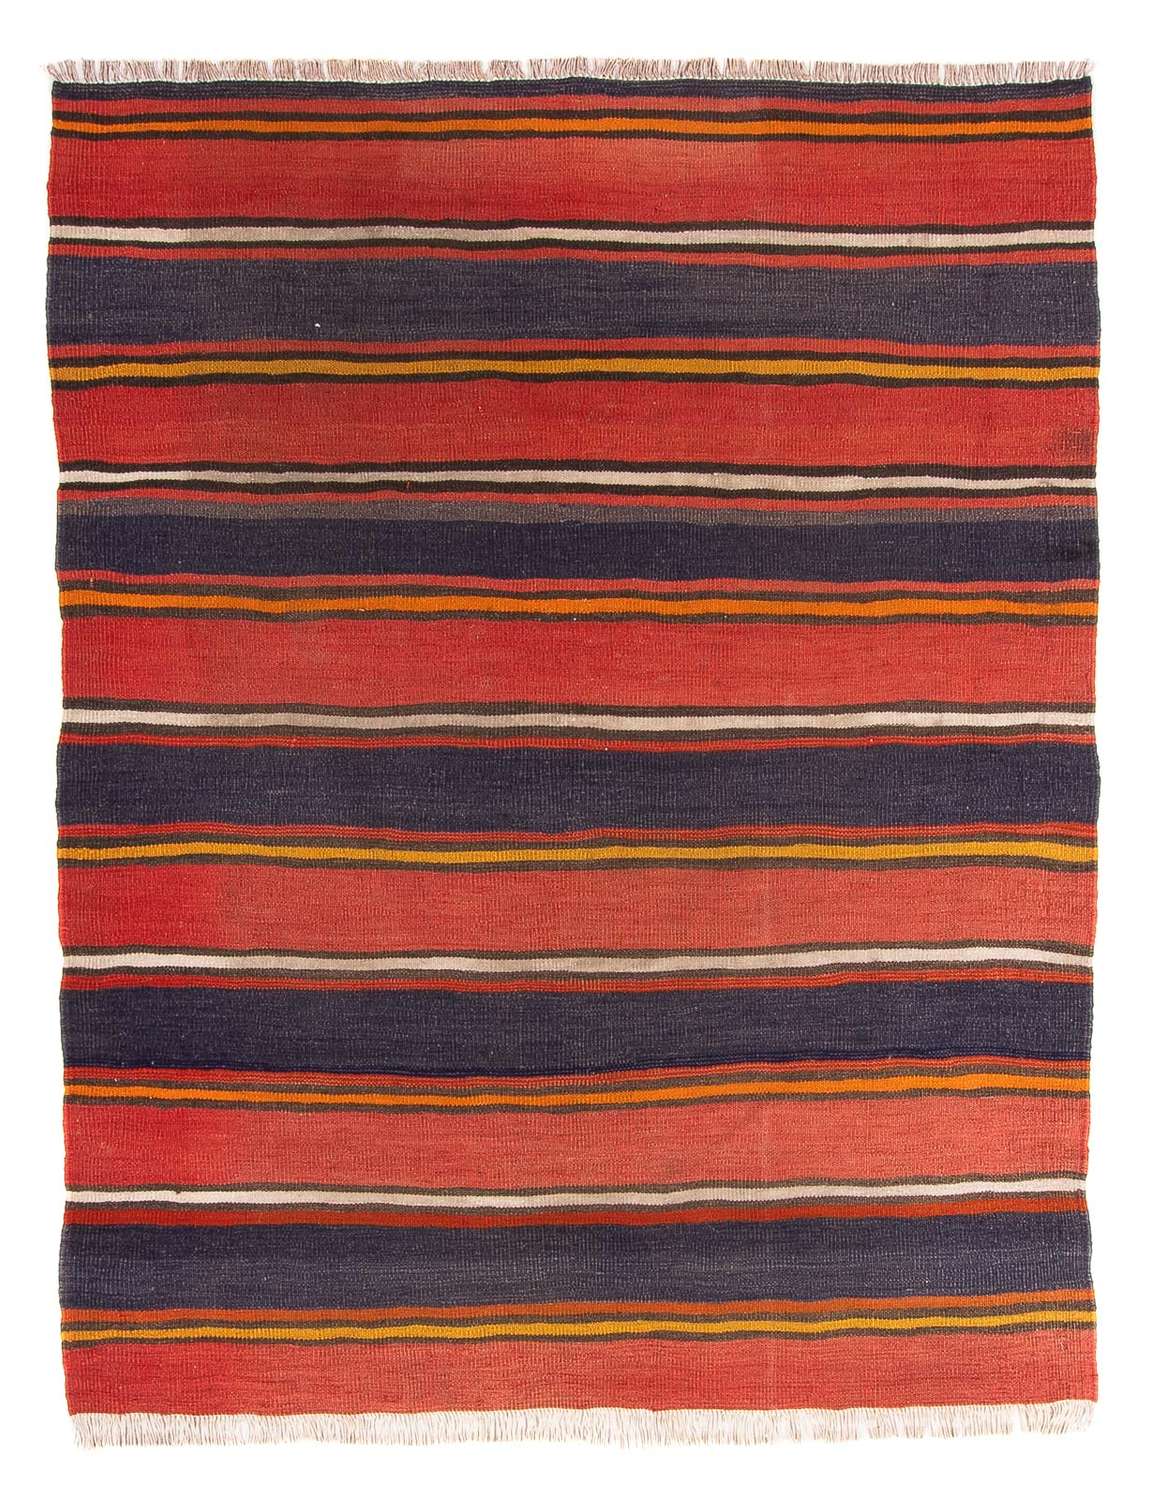 Kelim tapijt - Oud - 205 x 150 cm - veelkleurig